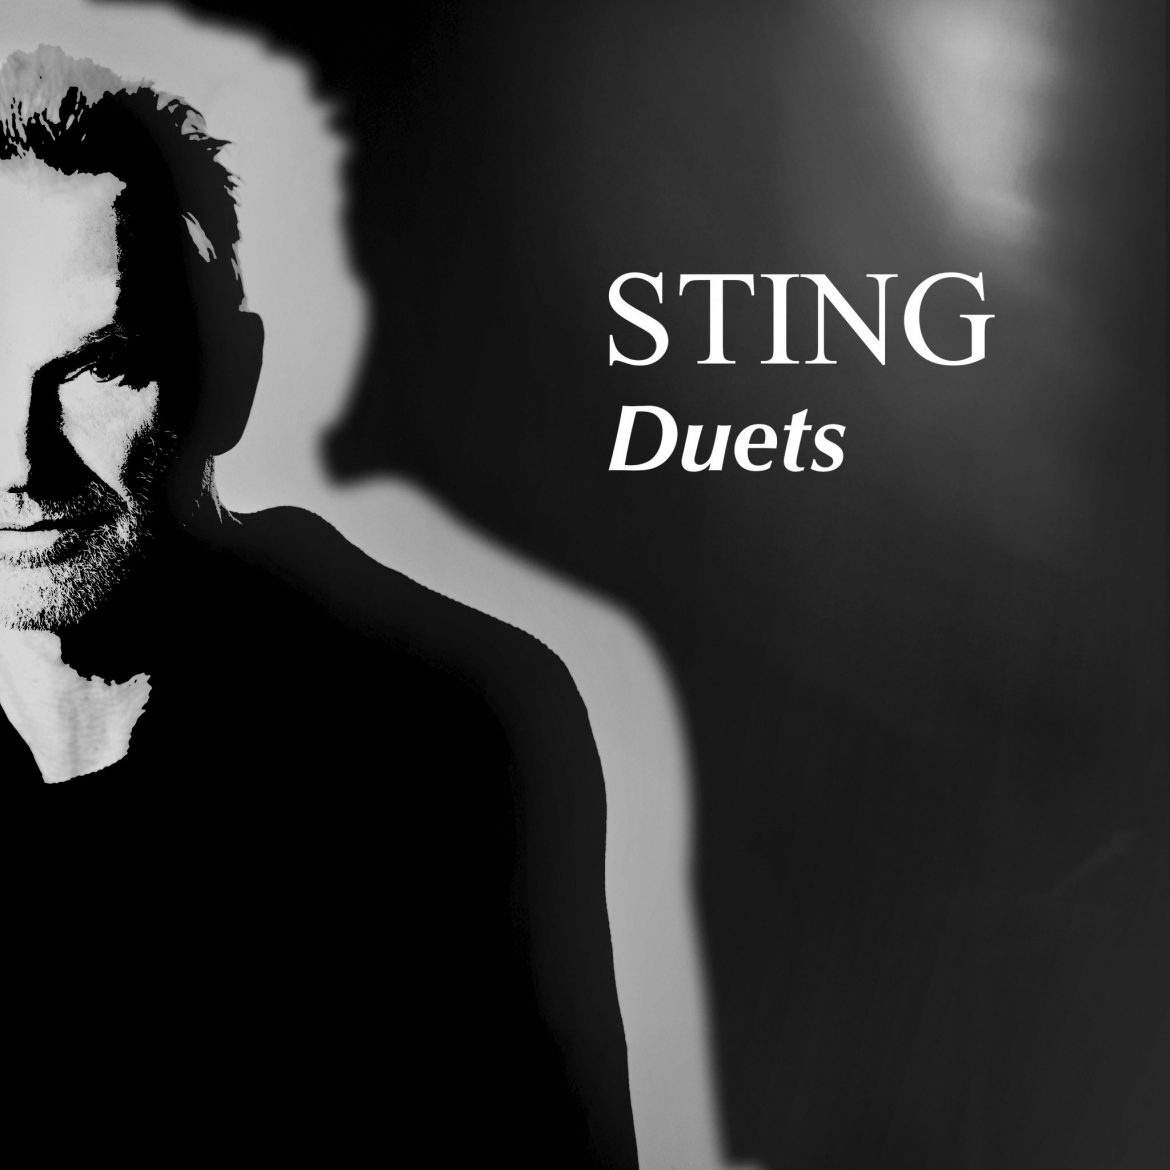 Sting wydaje nowy album z duetami